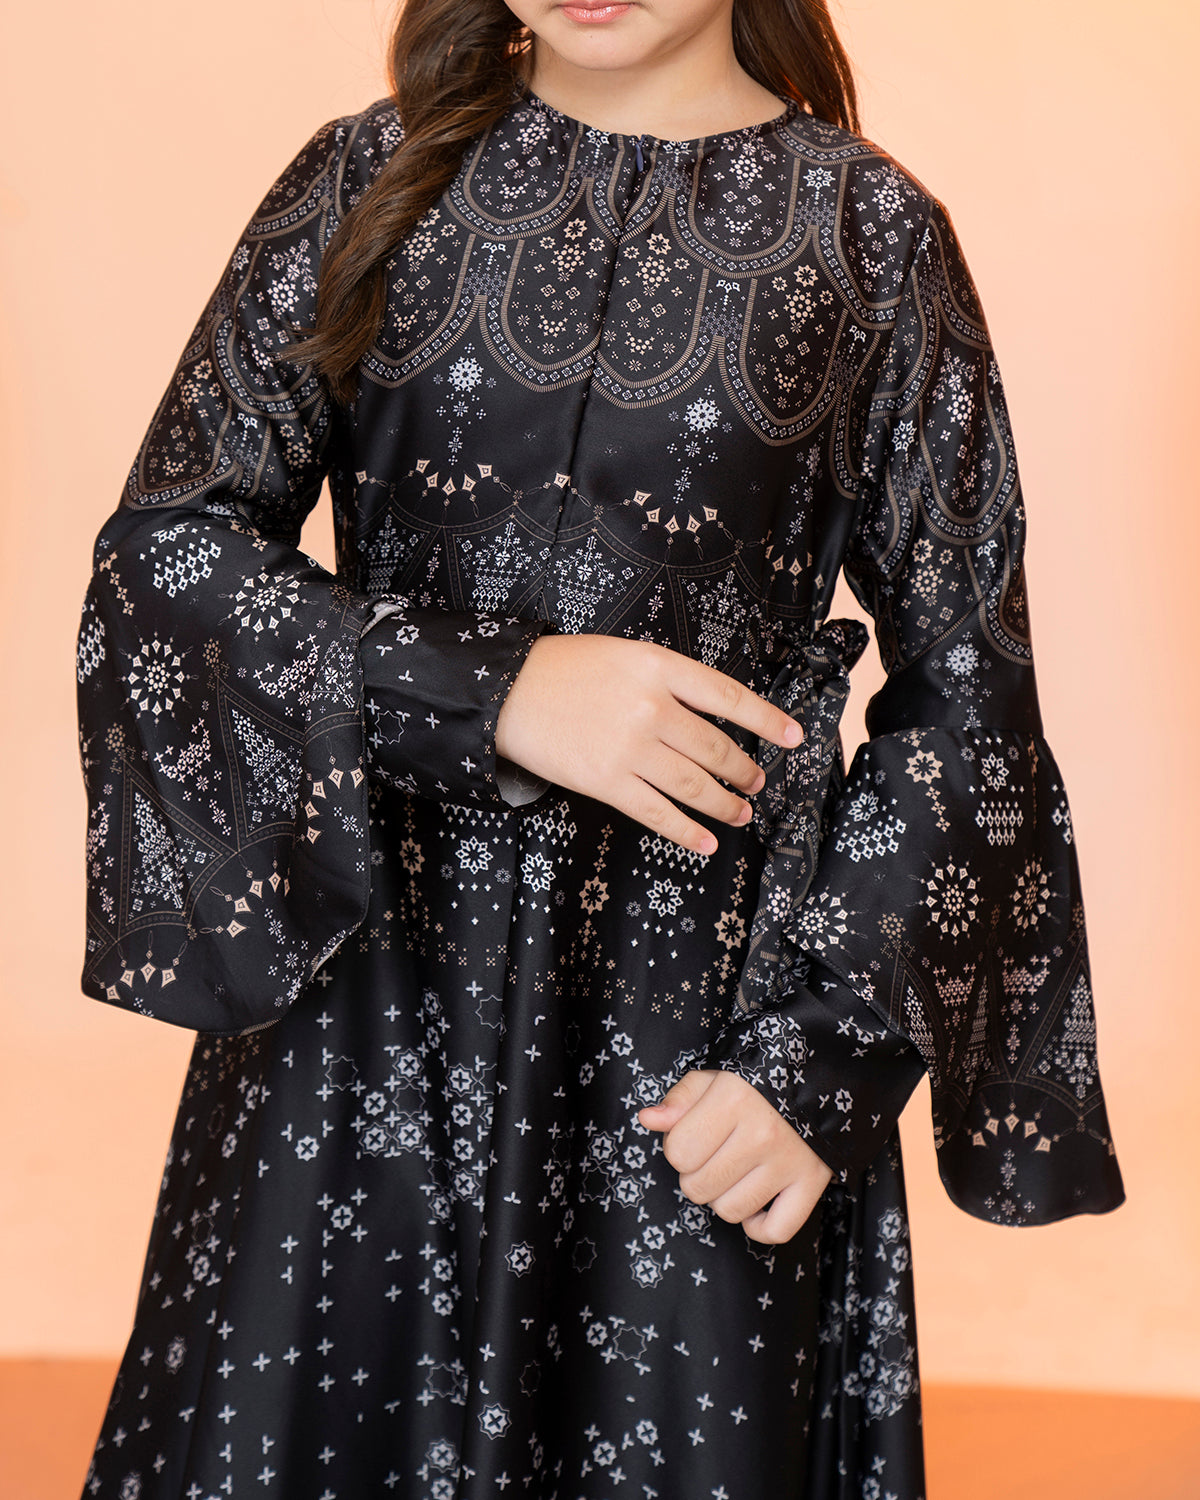 Madinah Dress Anak in Raven Black